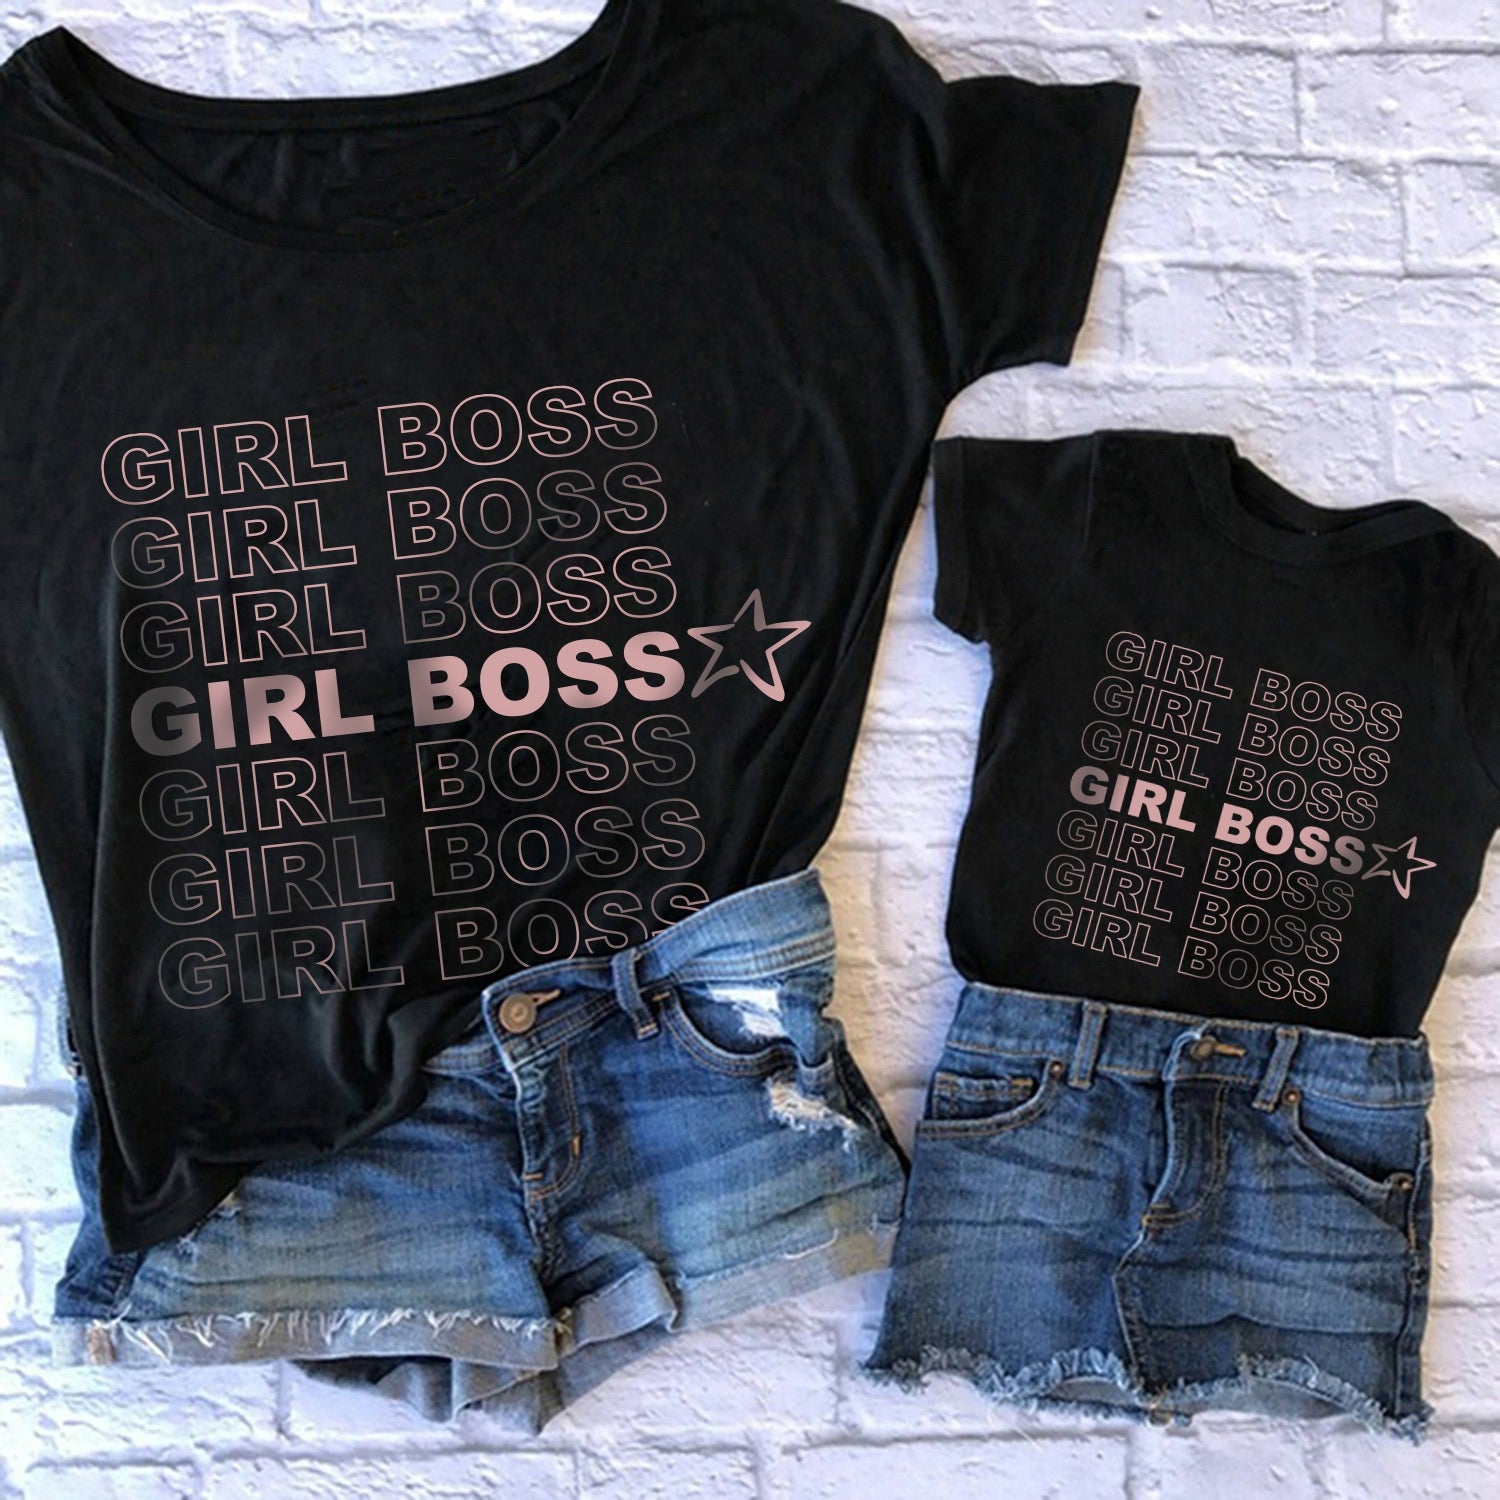 Camiseta Girl Boss